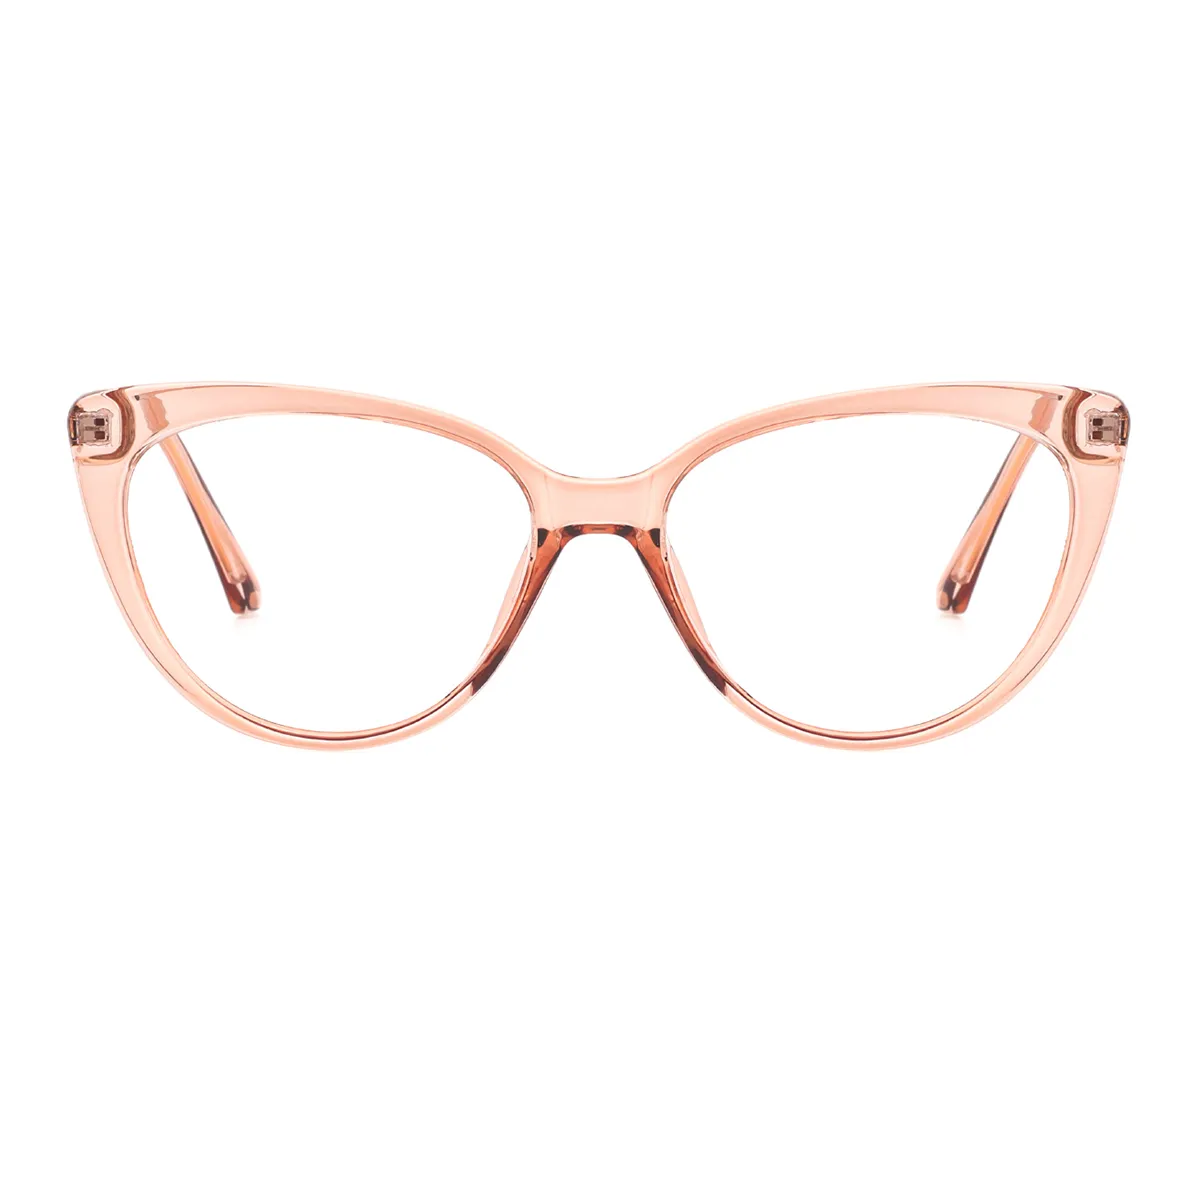 Hestia - Cat-Eye Translucent-tea Glasses for Women